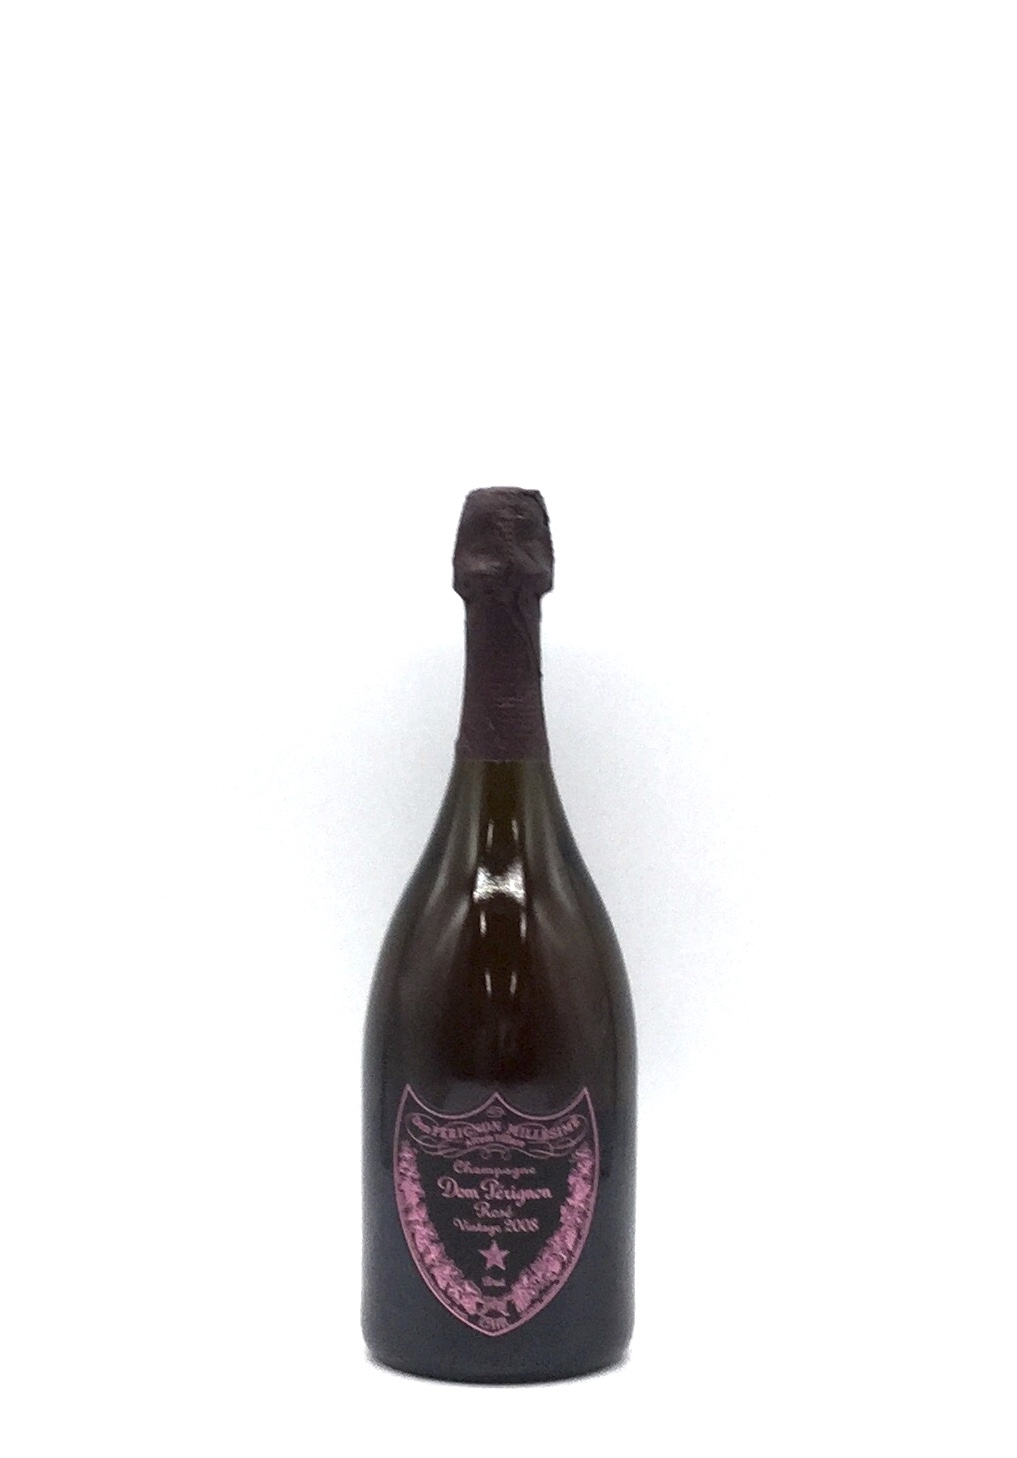 ドンペリ ドン・ペリニヨン ロゼ 2008年 750ml - ワイン